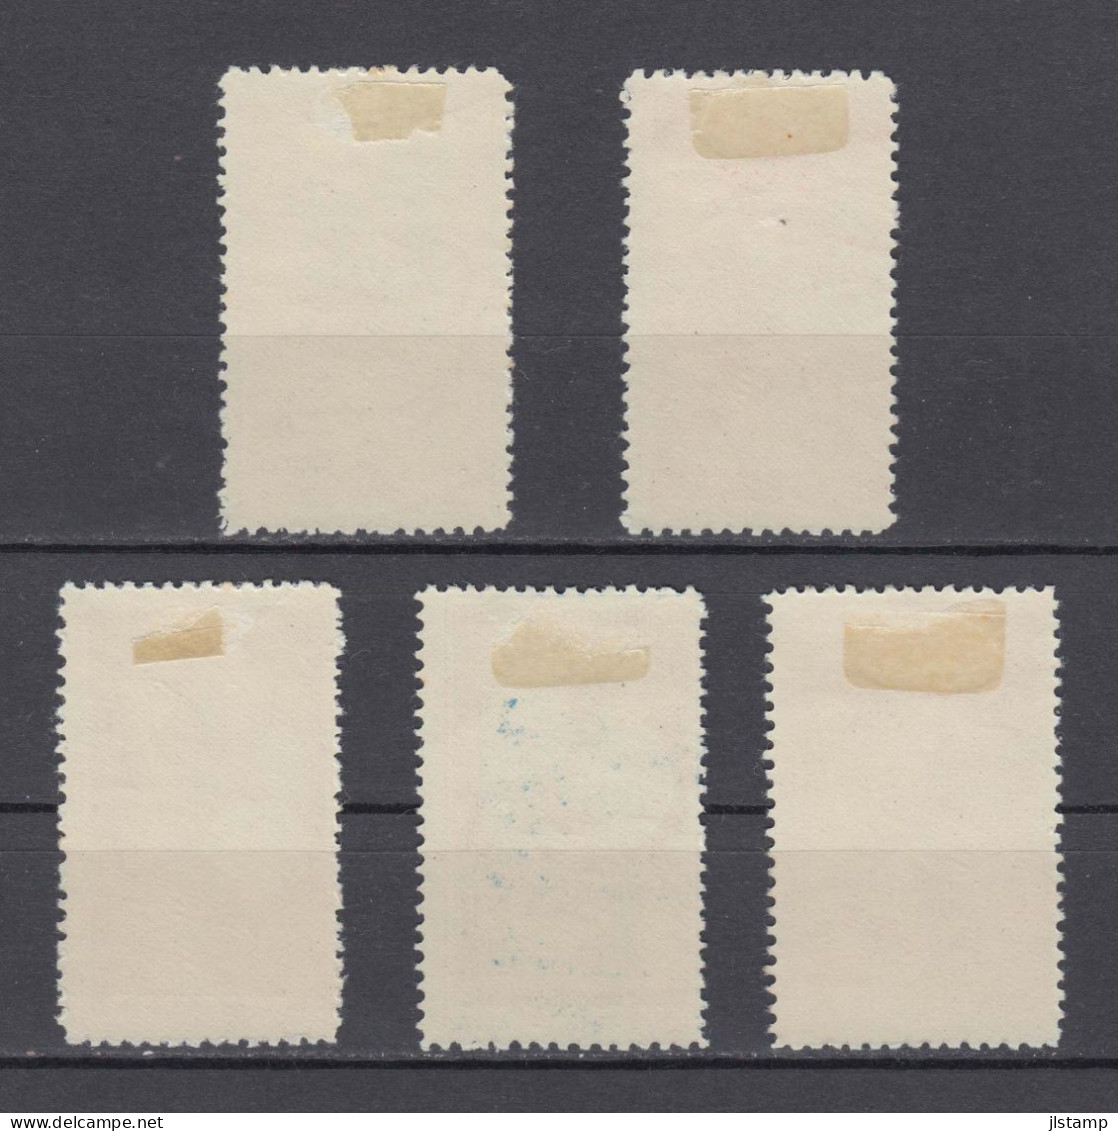 Turkey 1950 Izmir International Fair Stamp Set,Scott# 1008/1012,OG MH,VF - Nuovi